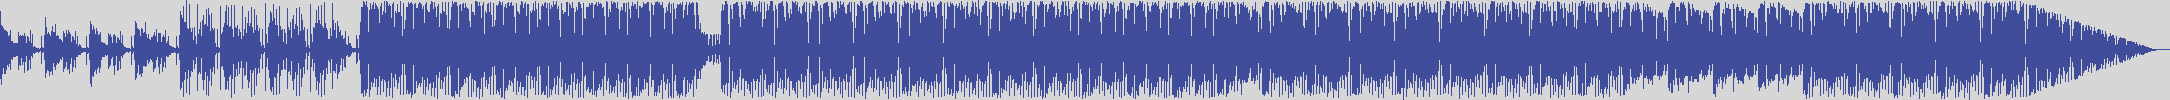 noclouds_chillout [NOC140] Total System - Rcxxix [Original Mix] audio wave form